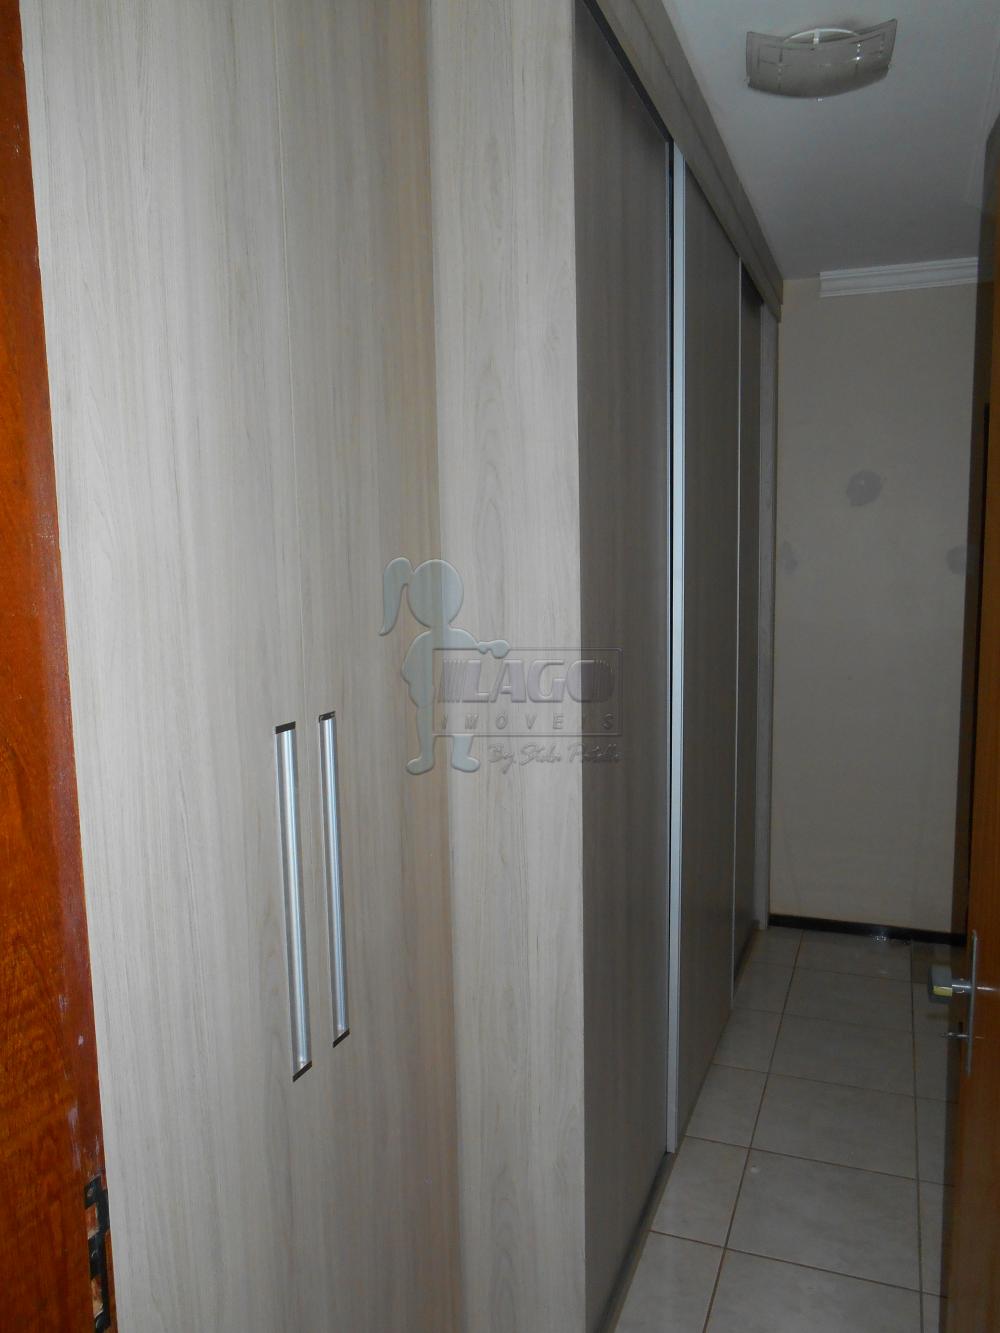 Alugar Apartamentos / Padrão em Ribeirão Preto R$ 850,00 - Foto 15